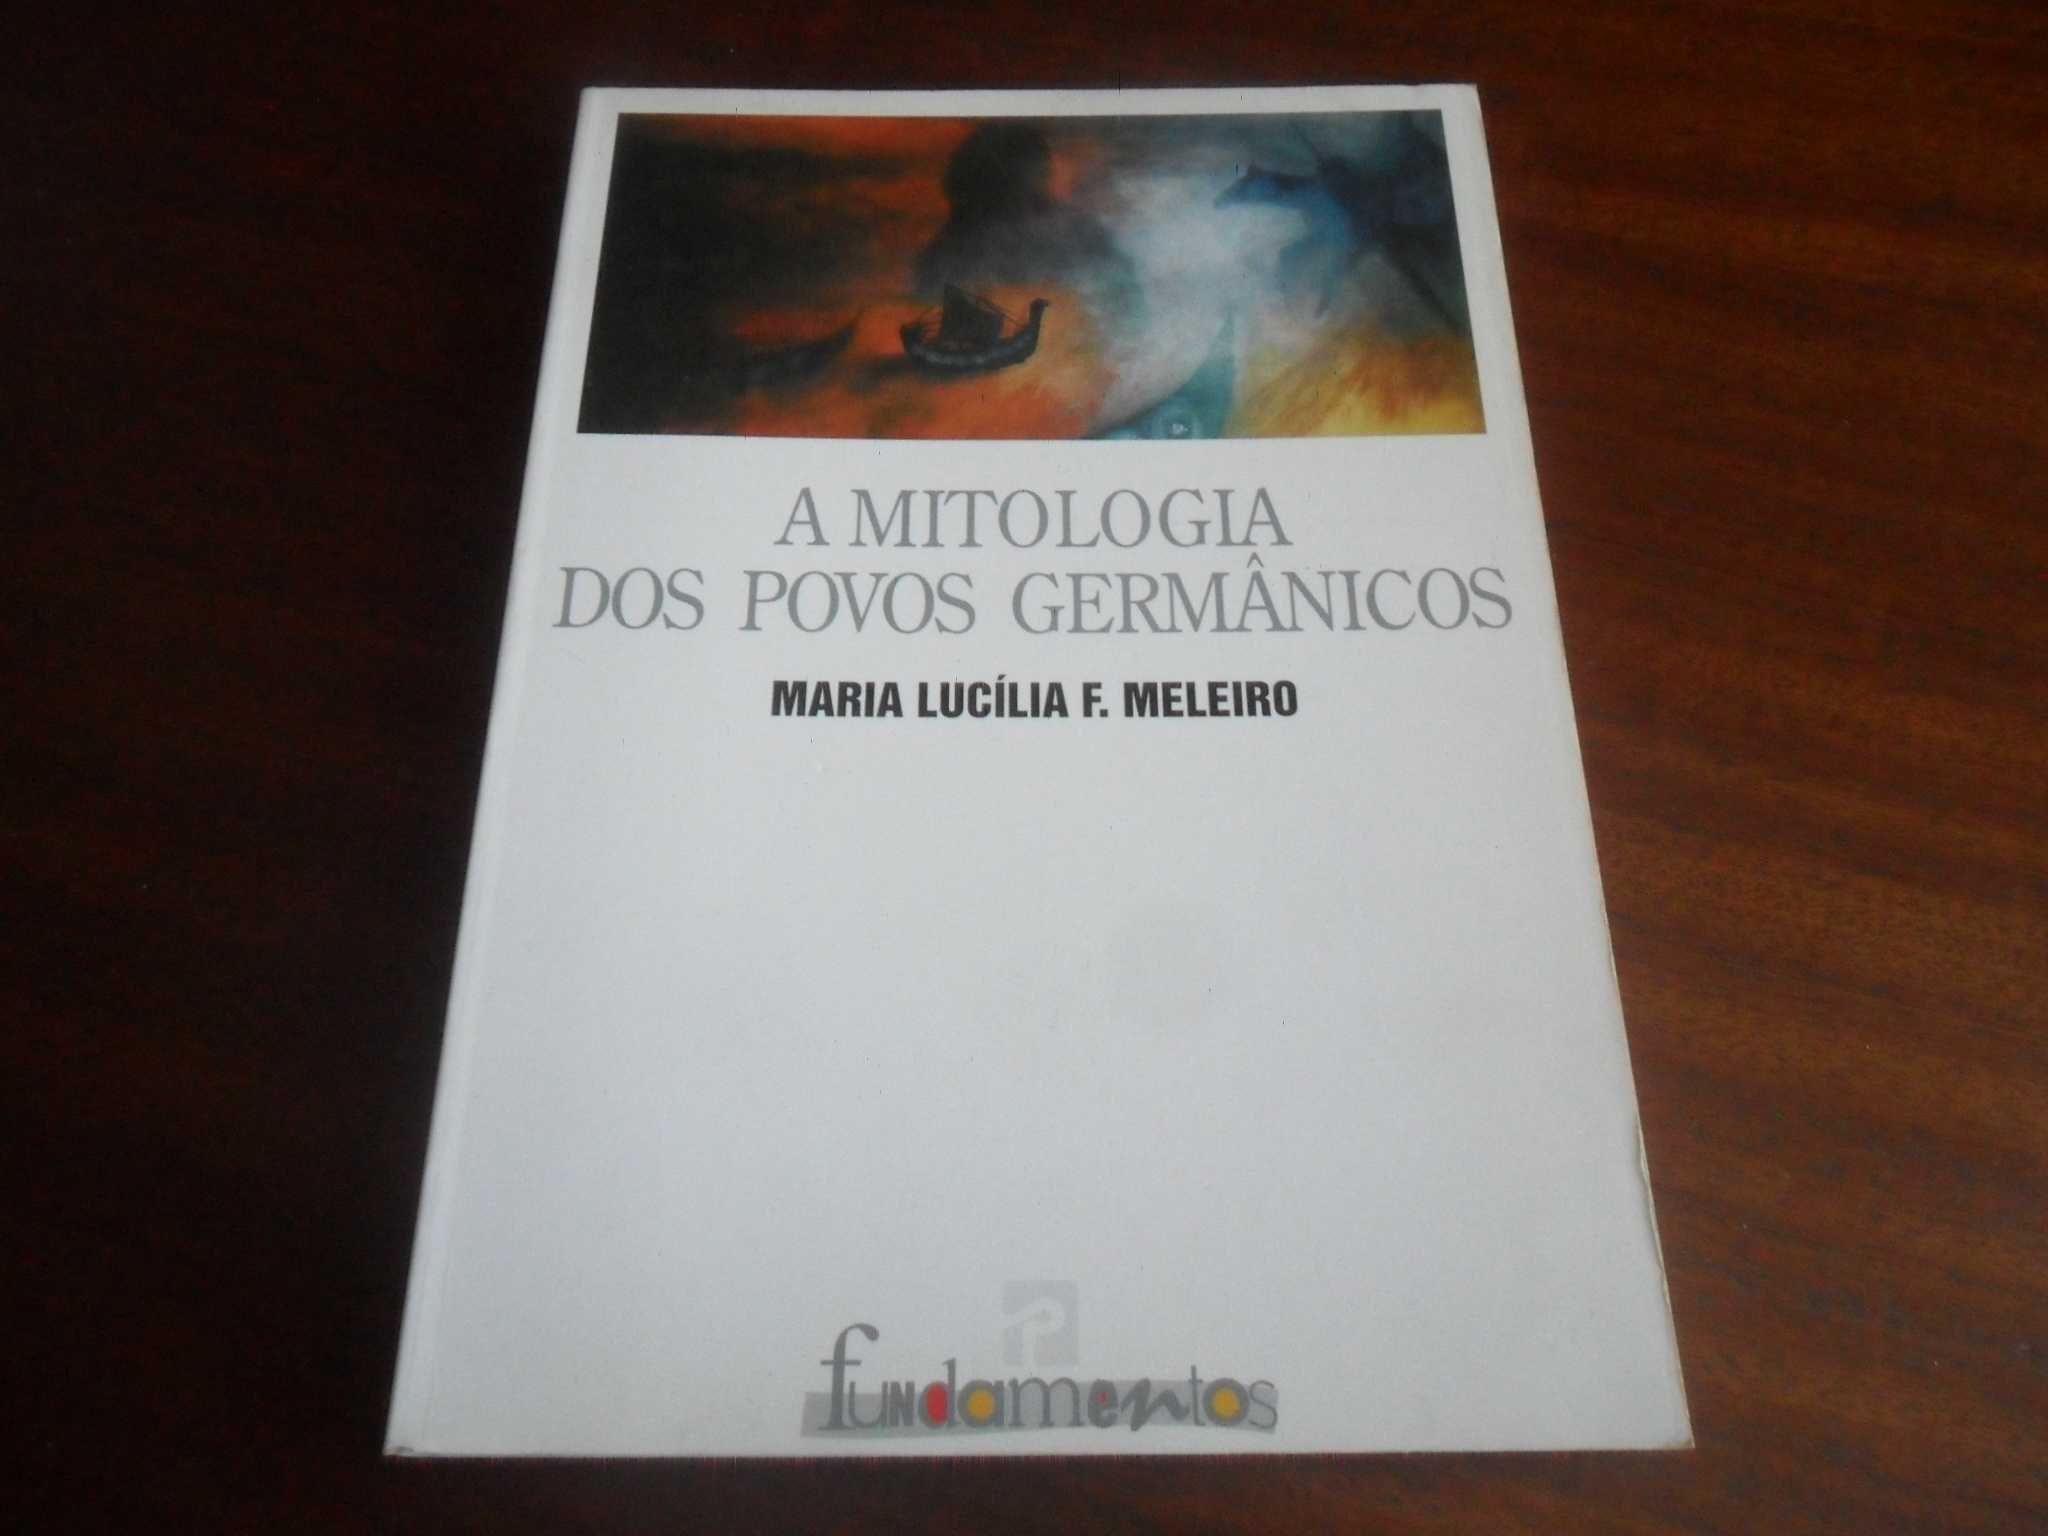 "A Mitologia dos Povos Germânicos" de Maria Lucília F. Meleiro